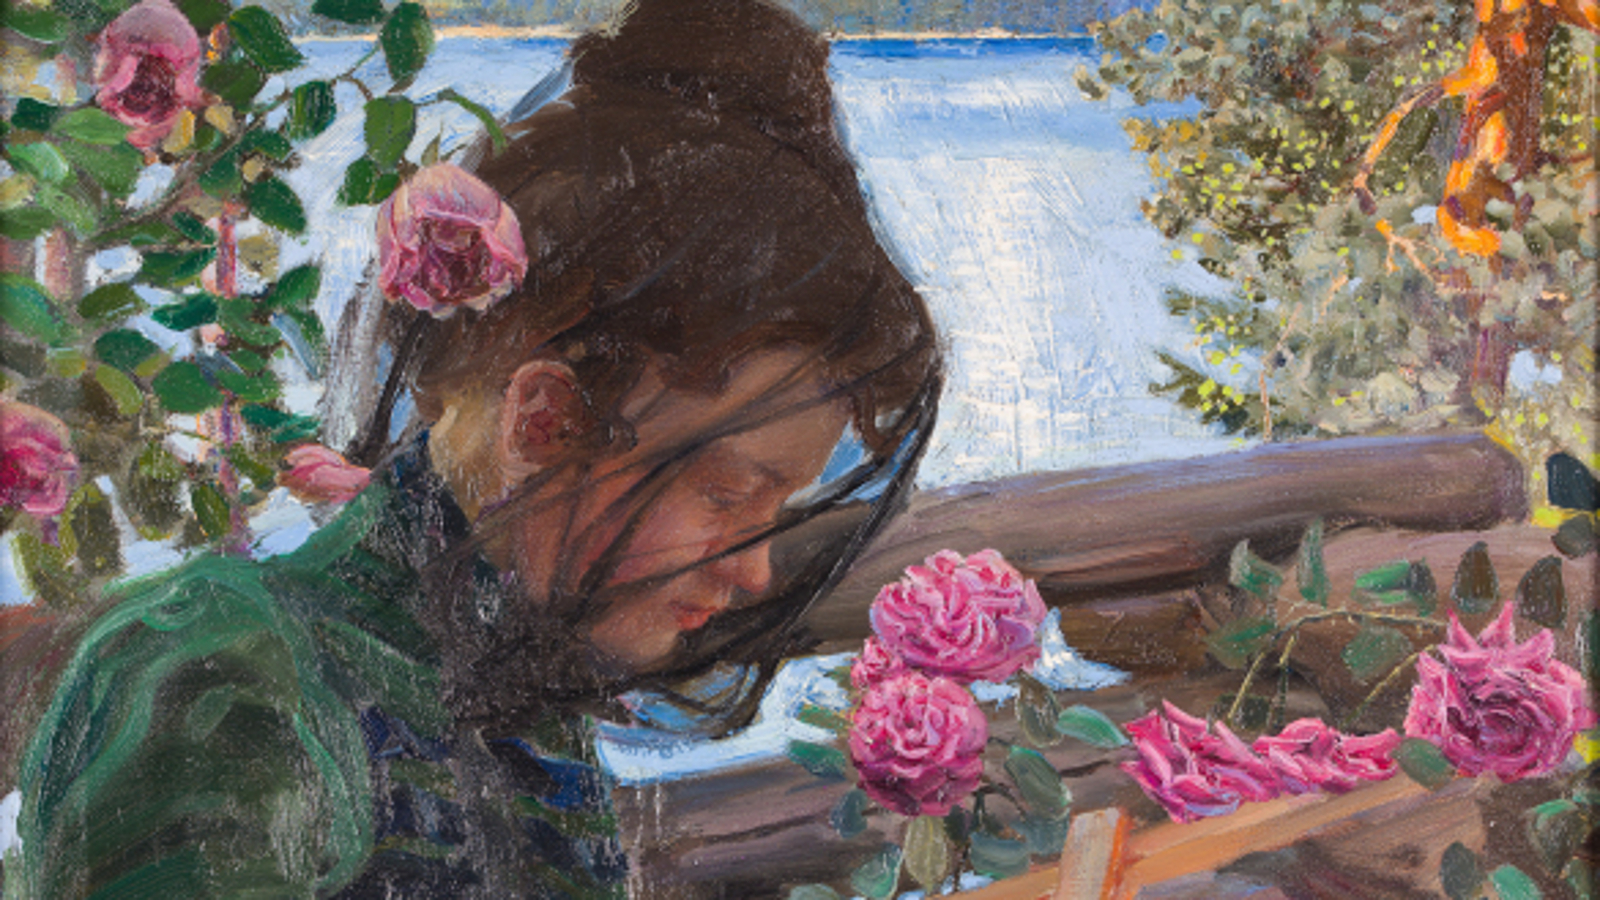 Kuvassa on Mary Gallen-Kallelan kasvot sivukuvassa. Hänellä on tummat hiukset kammattuna ylös ja harso päässään. Vieressä näkyy ruusuja ja puutarhaa.